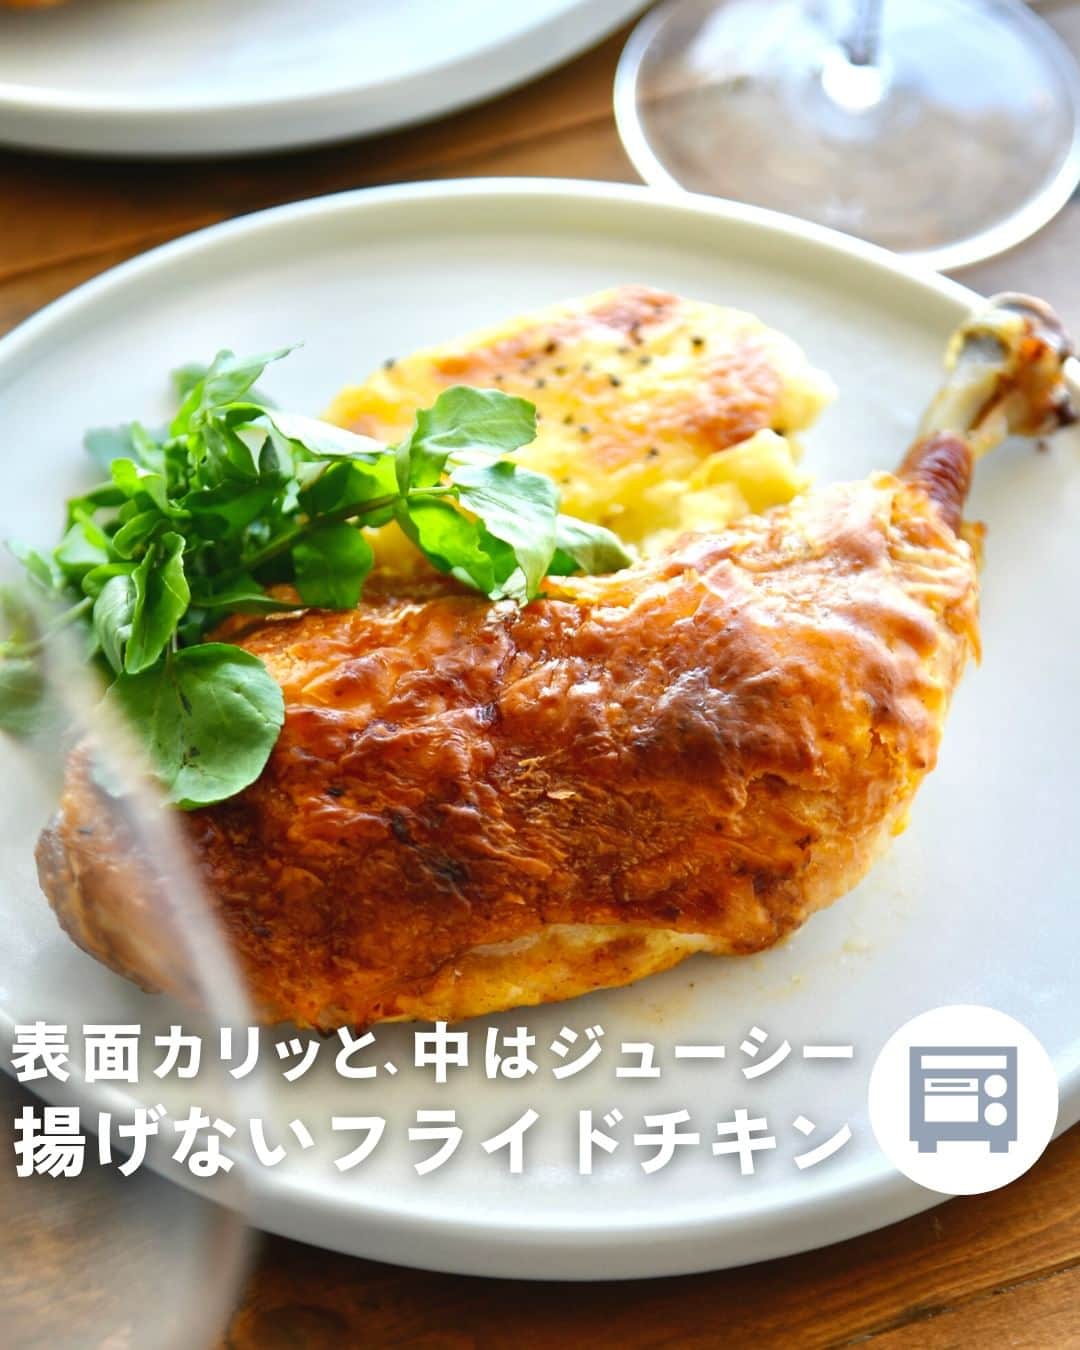 Cuisinart(クイジナート)ジャパン公式アカウントのインスタグラム：「🍗骨つき鶏もも肉で、揚げないフライドチキン  クリスマスメニューにもぴったり🎄✨ 表面カリッと、中はジューシー！ ちょっと豪華なフライドチキンを簡単に。  クイジナートの「エアフライ オーブントースター」は パワフルな熱風が庫内を循環しムラなく加熱するので、 油で揚げない、ヘルシーなエアフライ調理が可能💫  ２本を一度に調理する場合はメッシュバスケットに、  1本で調理する場合はグリルコンテナ トップを使うのがおすすめです。  油で揚げていないとは思えない ジューシーな仕上がりをぜひお試しください♪  🍗揚げないフライドチキン  📝材料2人分 骨付き鶏もも肉...２本 塩...小さじ1 胡椒...少々 ●溶き卵...1個 ●おろしニンニク...１片 ●牛乳...大さじ2 ●ケチャップ...大さじ３ ●ナツメグ...少々 片栗粉...大さじ３  ＜作り方＞ ① 骨付き鶏もも肉を深めのバットに並べ、 混ぜた●をよく揉みこむ。 冷蔵庫で３０分以上休ませる。  ② 片栗粉を茶漉しでふるい入れて 粉気がなくなるまで全体を揉んだら、 メッシュバスケット（1本の場合はグリルコンテナ トップ）に並べて エアフライモード、１５０度で３０分焼く。  ※お好みで、途中オイルを表面に塗ると、 艶よく仕上がります。  ・。・。・。・。・。・⁣  📷Photo： @reiko.t.table  ◽️ITEM：エアフライ オーブントースター⁣⁣  ⁣⁣🔍TOA-38SJ(シルバー） TOA-38WJ（ホワイト）  ・。・。・。・。・。・⁣  ーーーーー クイジナート公式HPでは、毎日の料理が楽しくなる様々な製品情報やレシピを公開中♪ 詳しくはプロフィールのリンクから！ ▶️ @cuisine_art ーーーーー  #Cuisinart #クイジナート #クイジナートのある生活 #クイジナートLOVE #時短調理 #時短家電 #キッチン家電 #おうちごはん #おうち時間を楽しむ #丁寧な暮らし #美味しい時間 #料理好きな人と繋がりたい #クイジナートエアフライオーブントースター #クイジナートノンフライオーブントースター #オーブントースター #フライドチキン #鶏もも肉 #鶏もも肉レシピ #骨付き肉 #鶏肉レシピ #クリスマスレシピ #クリスマスメニュー #クリスマスご飯 #クリスマスごはん #おうちクリスマス #おうちクリスマスディナー #パーティメニュー #クリスマスパーティー料理 #クリスマスパーティー #クリスマス料理」